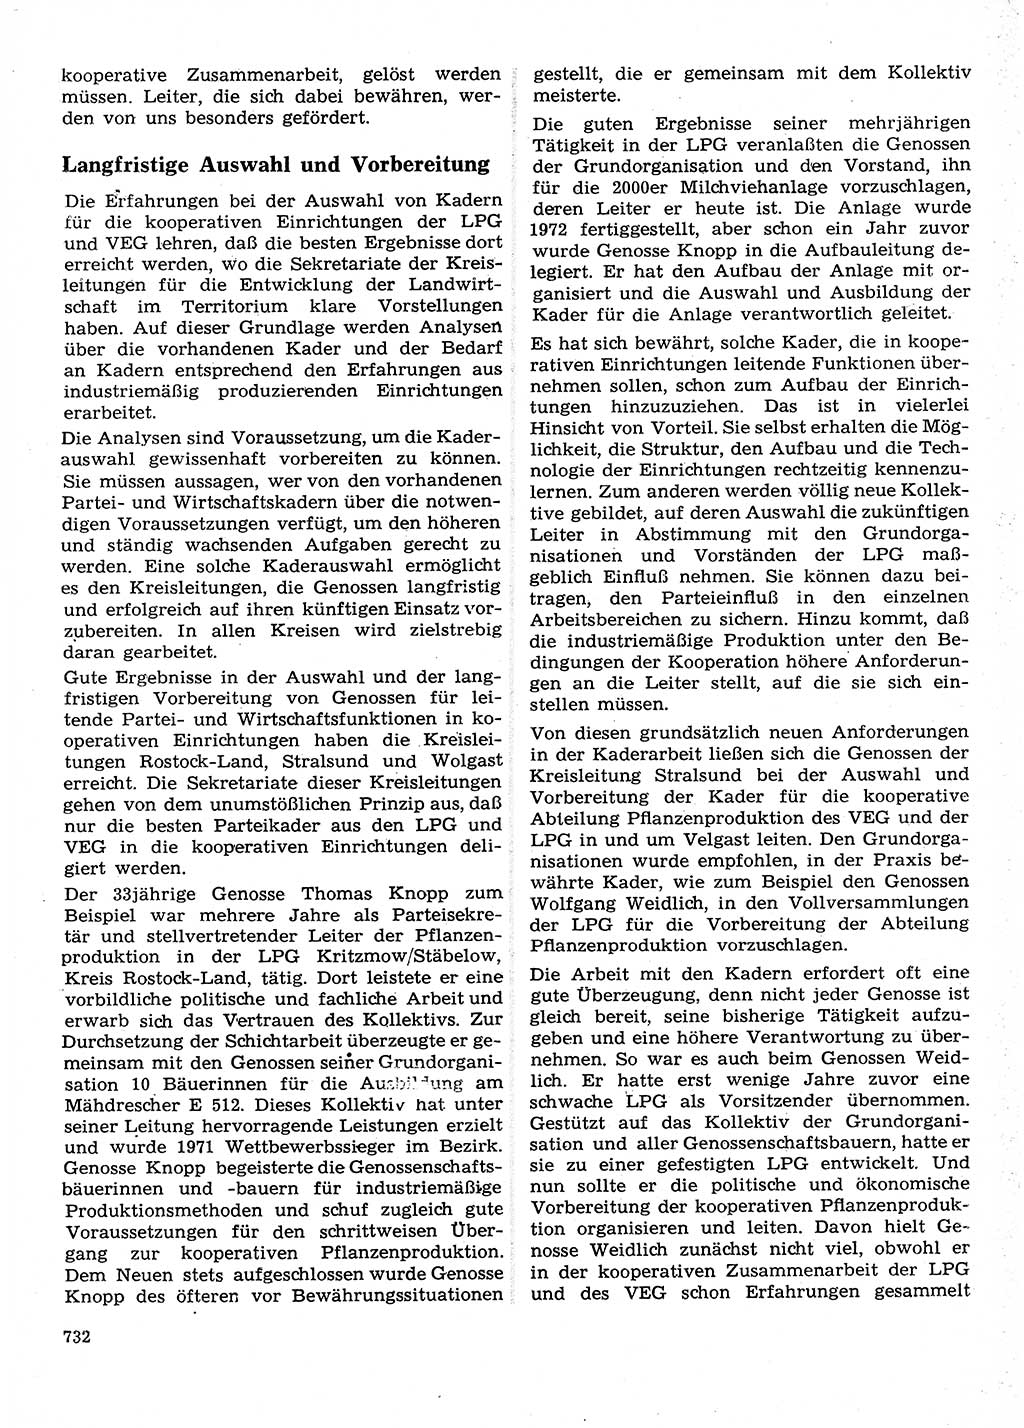 Neuer Weg (NW), Organ des Zentralkomitees (ZK) der SED (Sozialistische Einheitspartei Deutschlands) fÃ¼r Fragen des Parteilebens, 28. Jahrgang [Deutsche Demokratische Republik (DDR)] 1973, Seite 732 (NW ZK SED DDR 1973, S. 732)